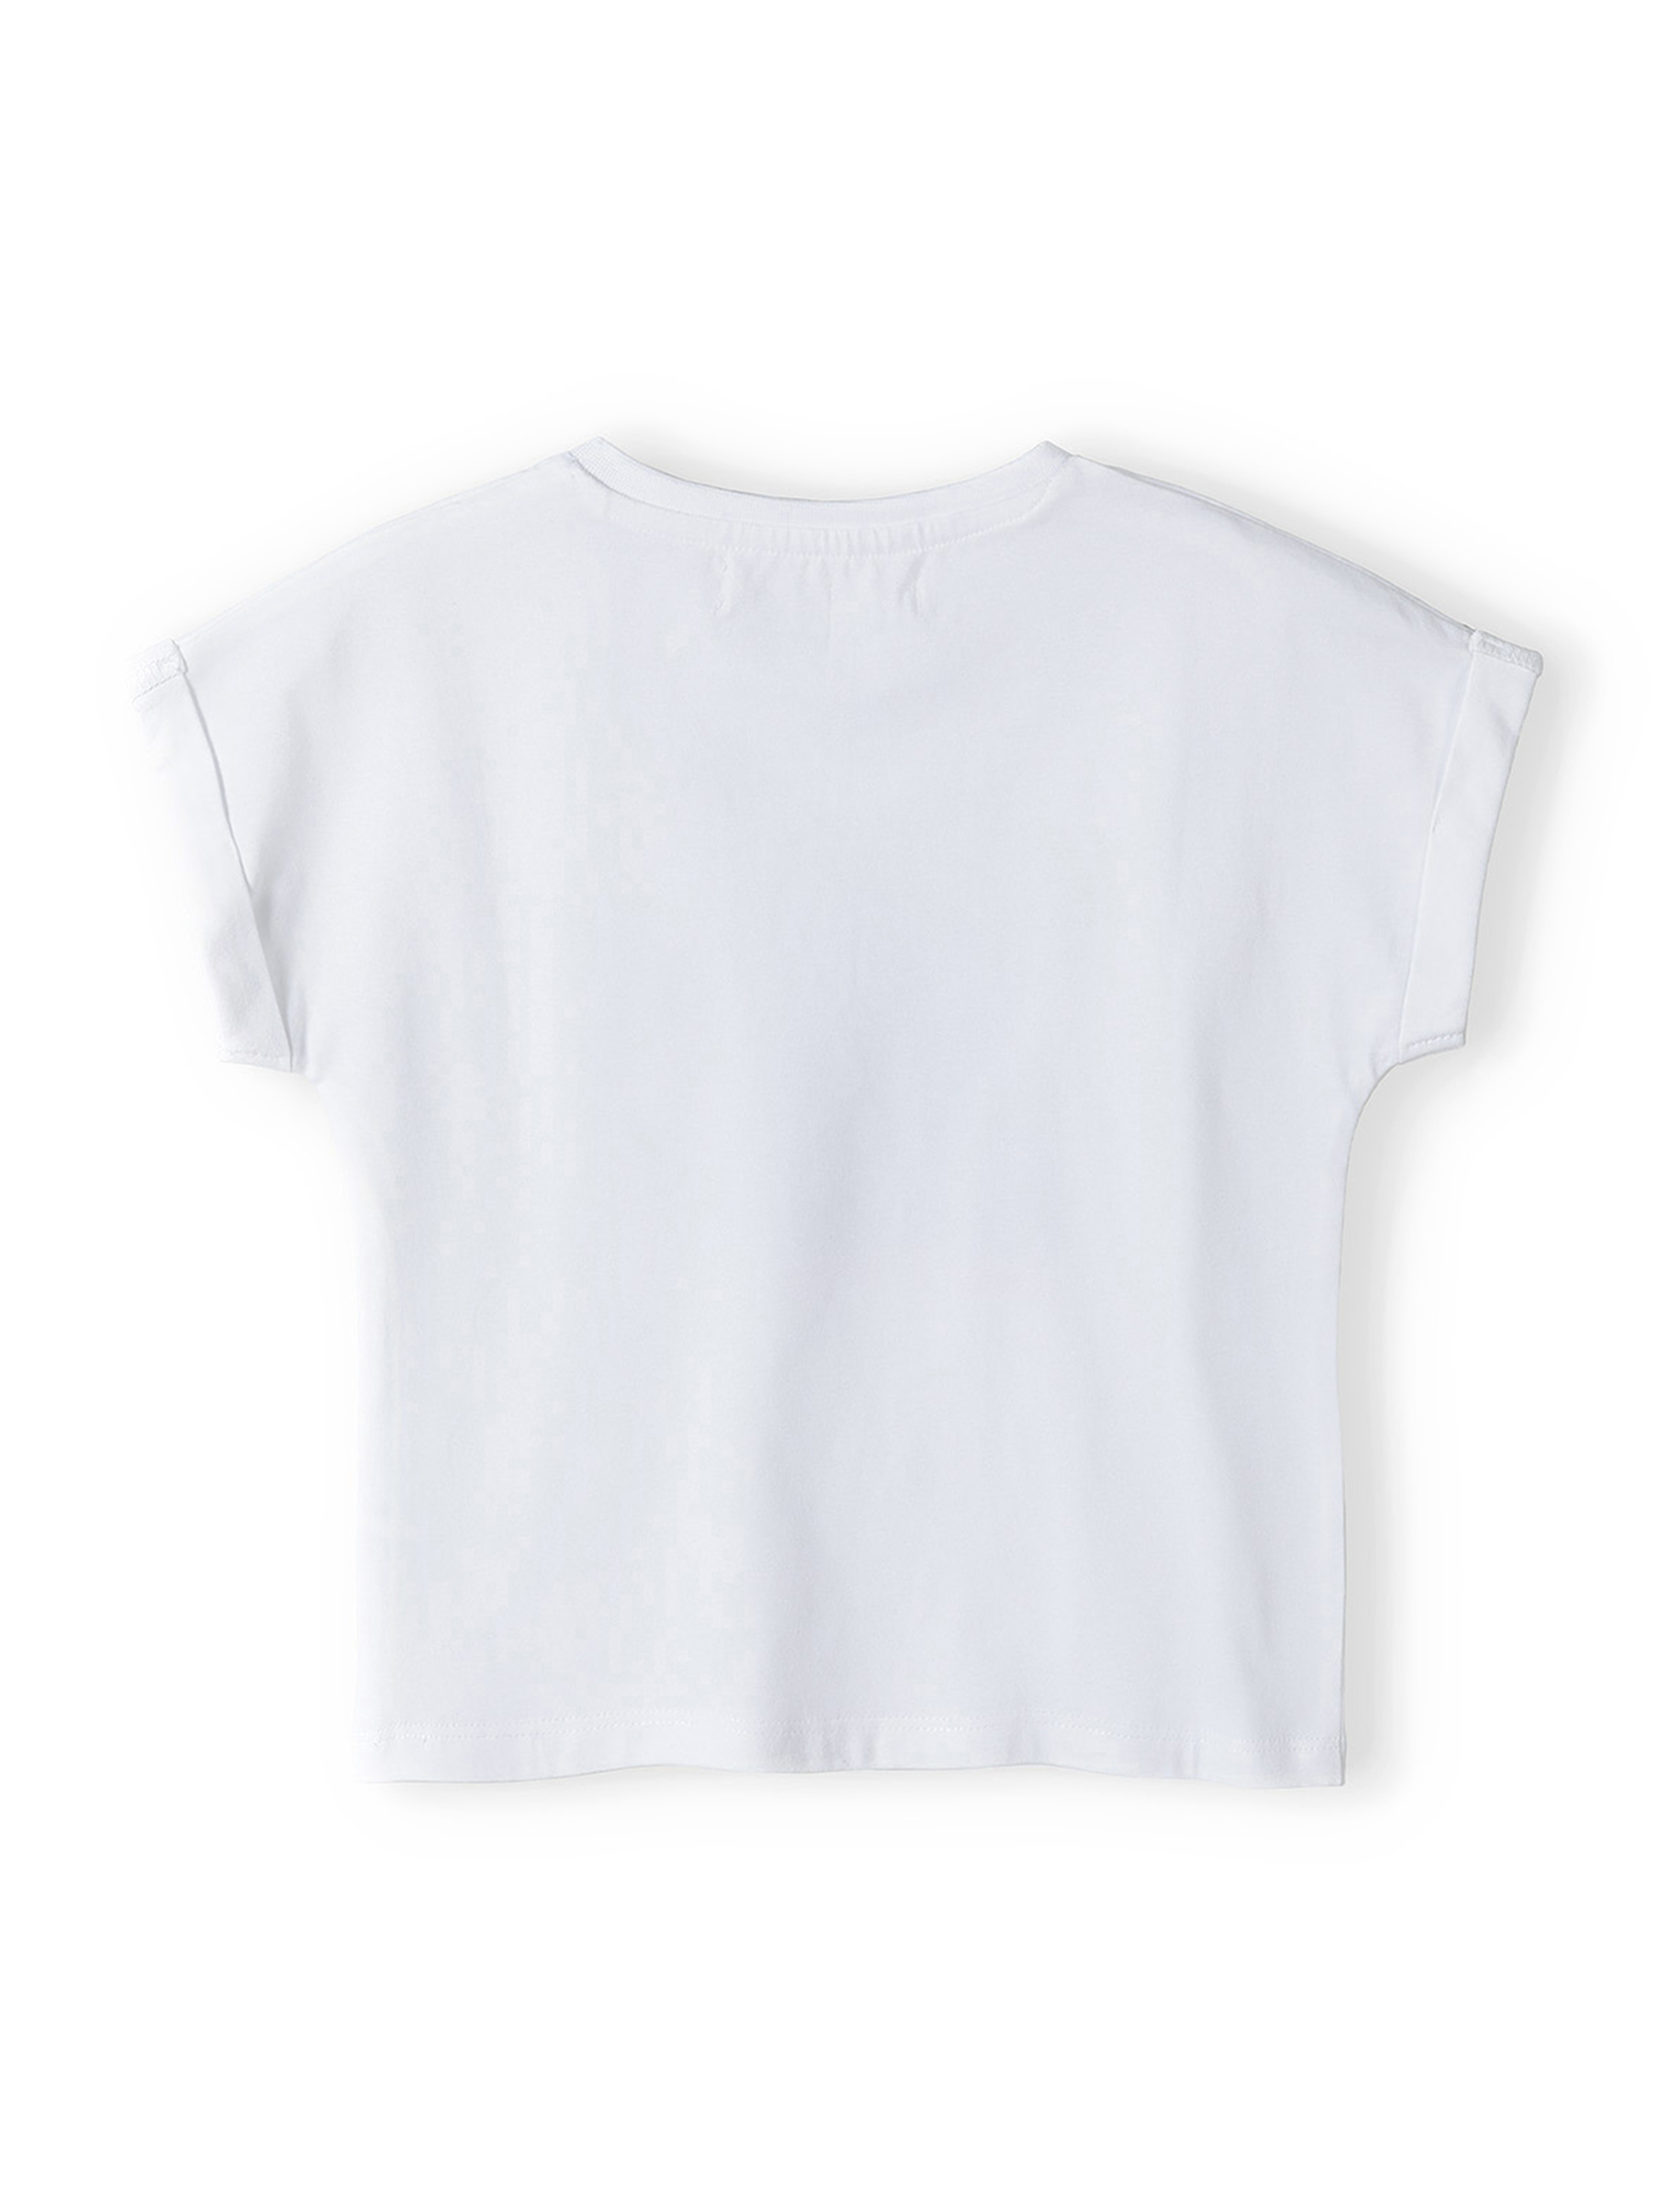 Biała koszulka bawełniana dziewczęca z nadrukiem